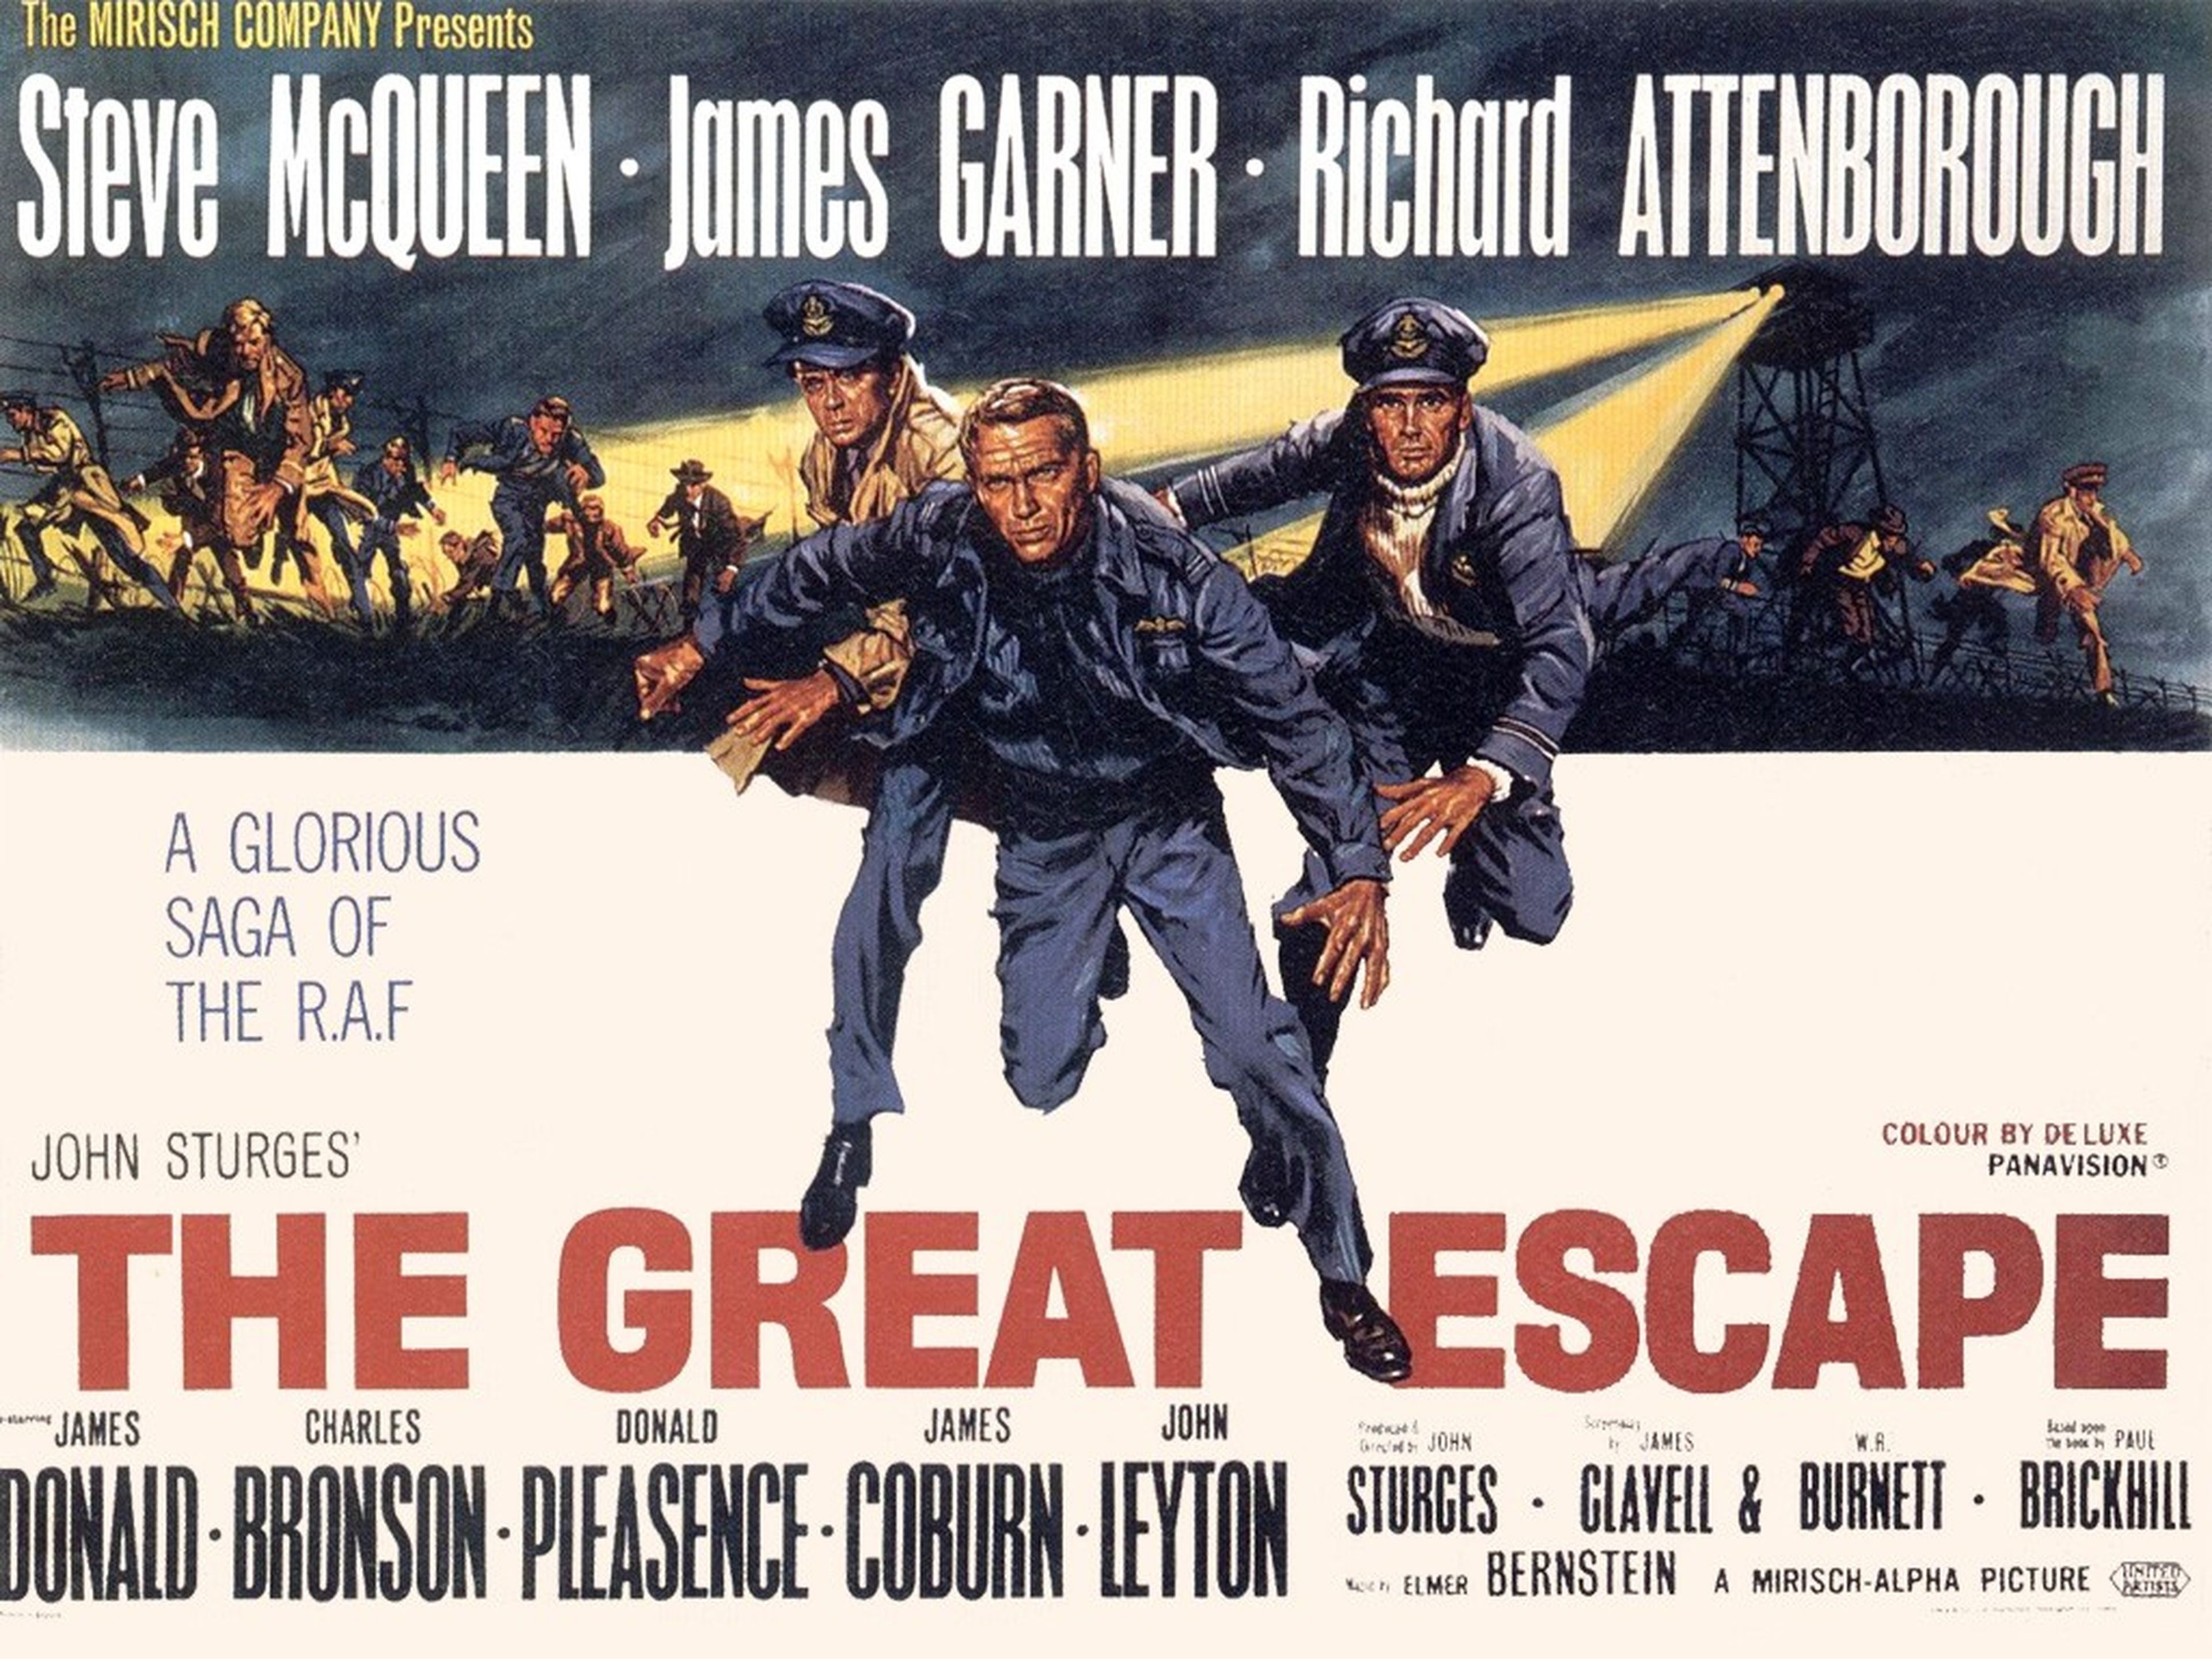 La gran evasión (1963)